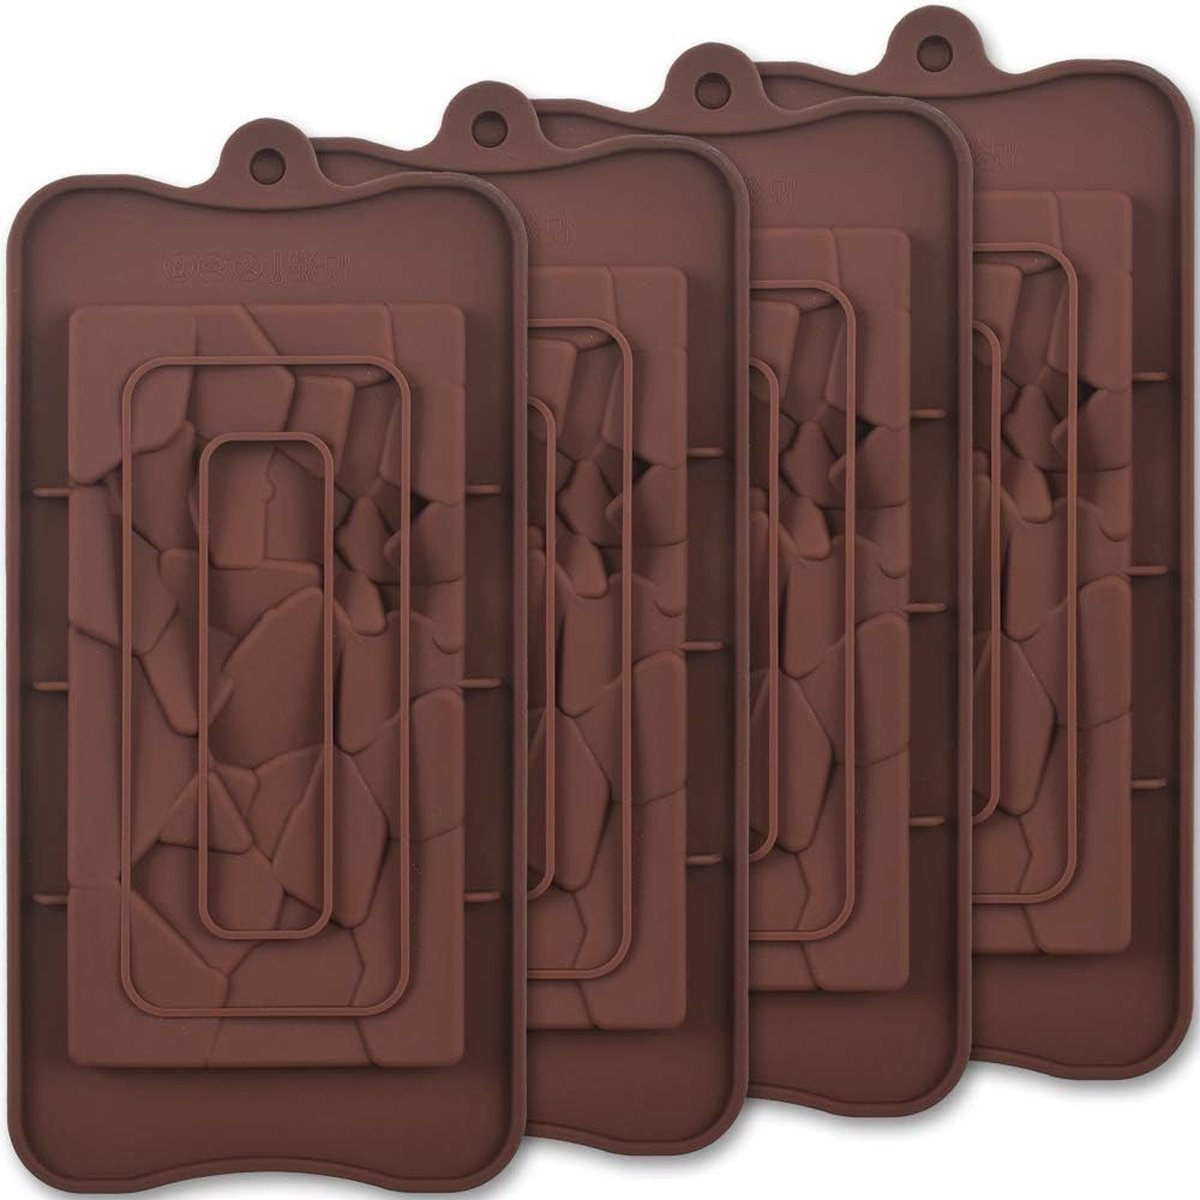 Break Apart siliconen chocoladevormen, fragmenten chocoladereepvormen, zelfgemaakte eiwit- en energiereepvormen, 4 verpakkingen